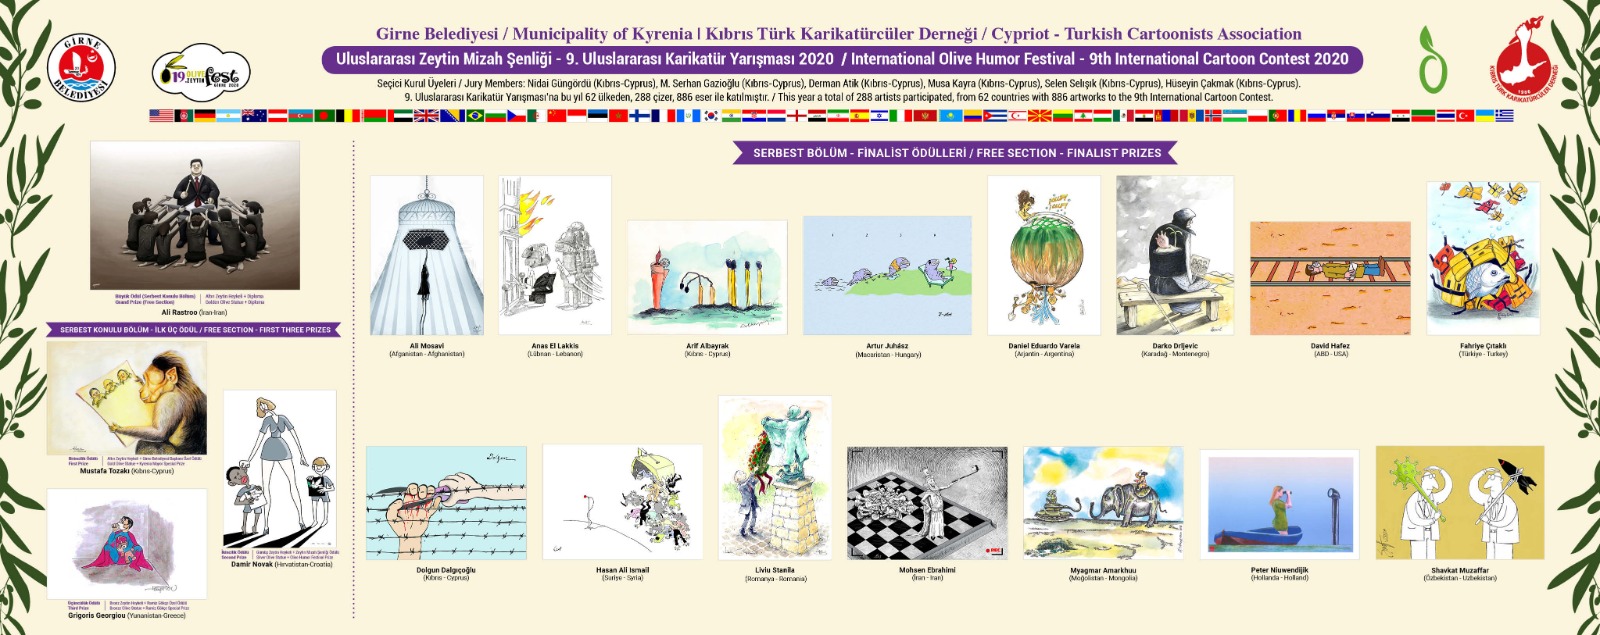 Zeytin Karikatürleri web sitesi yeniden hizmette